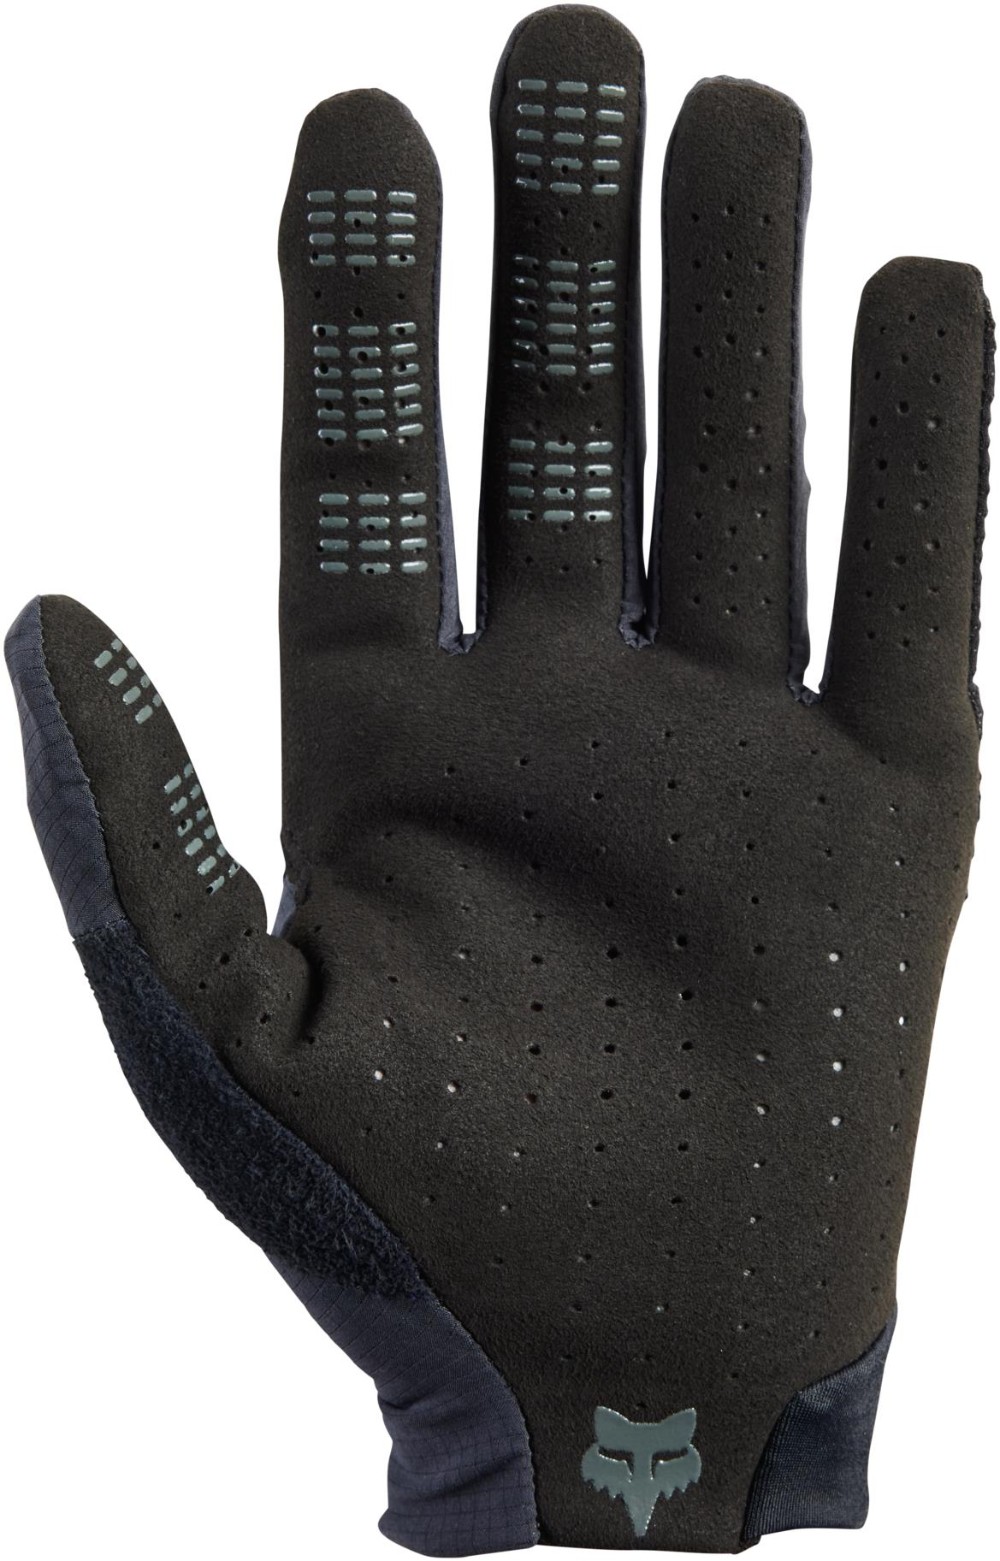 Flexair Pro Long Finger Gloves image 1